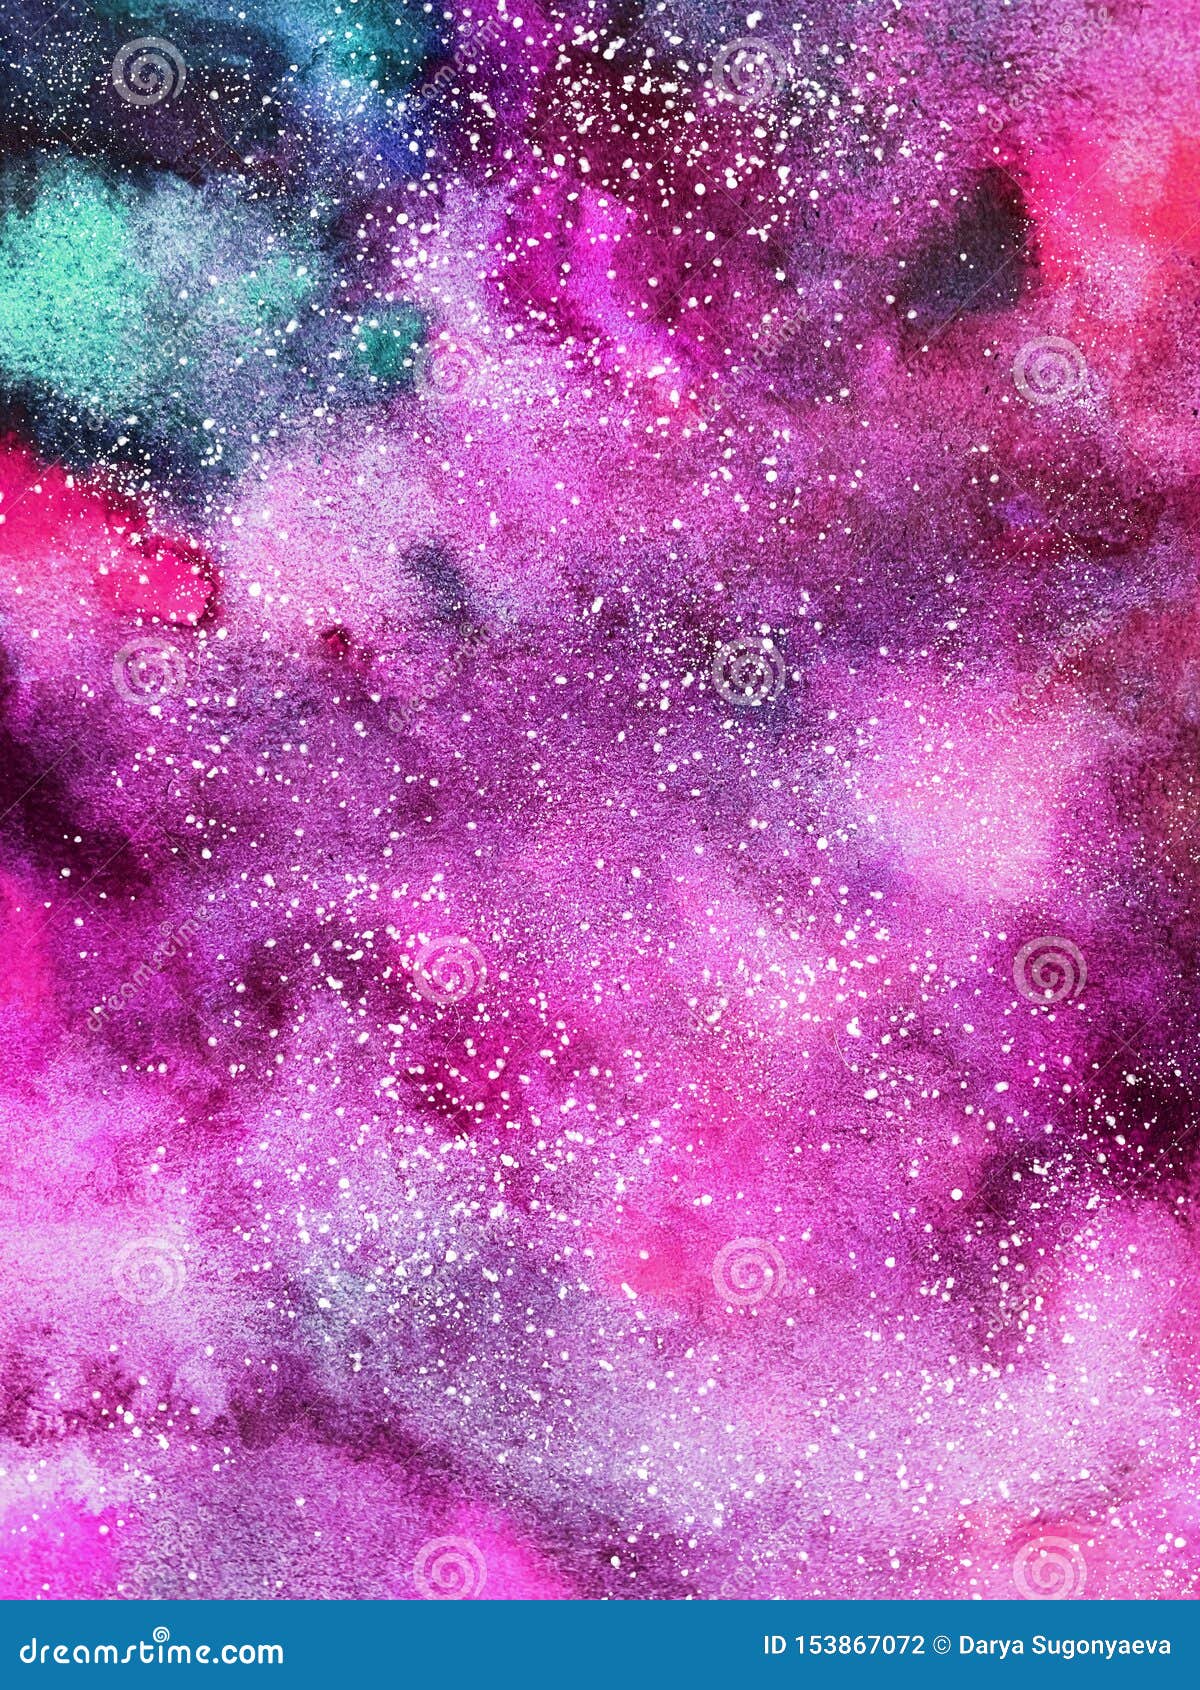 Hình nền thiên hà hồng làm nền tảng cho điện thoại của bạn sẽ khiến màn hình cảm ứng trở nên sống động hơn. Những gam màu tuyệt đẹp cùng với những hình ảnh độc đáo giúp bạn có một trải nghiệm mới mẻ khi sử dụng điện thoại của mình.